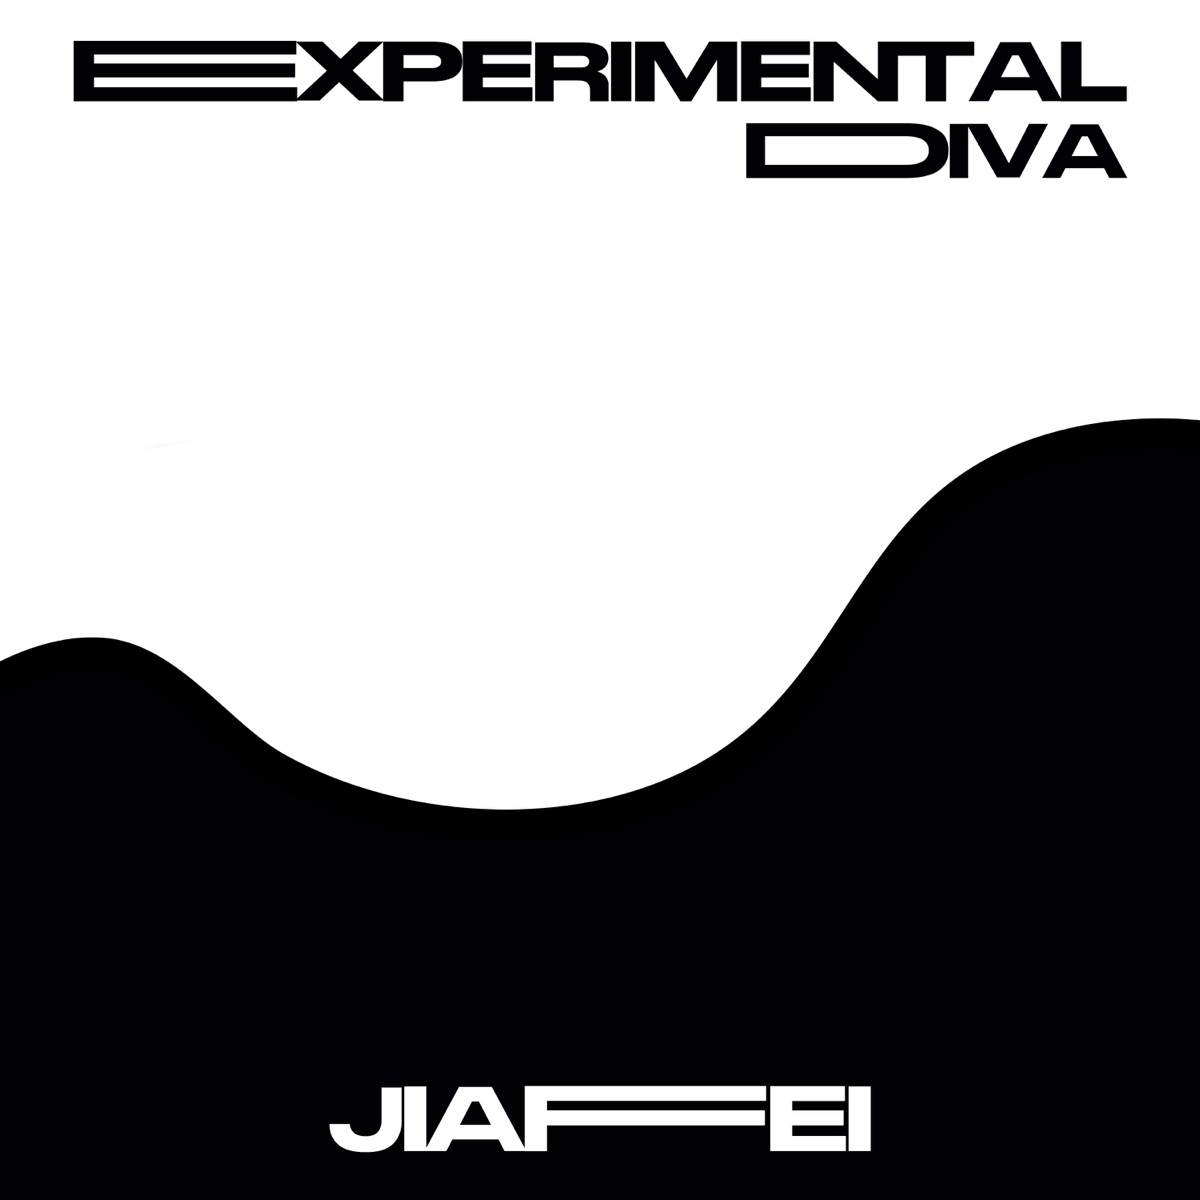 Experimental Diva - Jiafei